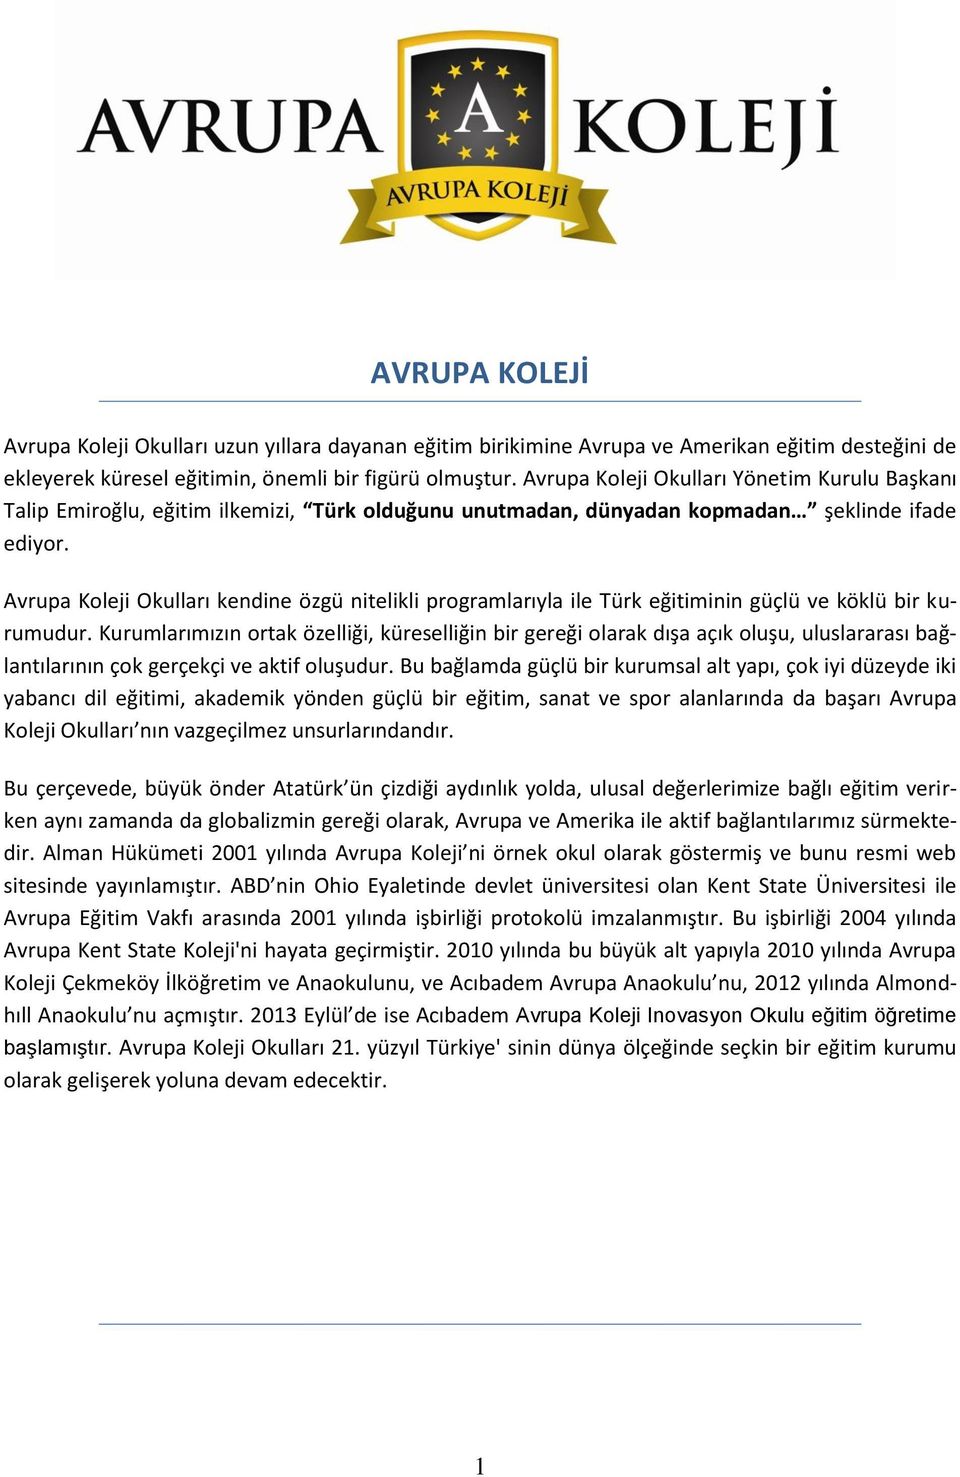 Avrupa Koleji Okulları kendine özgü nitelikli programlarıyla ile Türk eğitiminin güçlü ve köklü bir kurumudur.